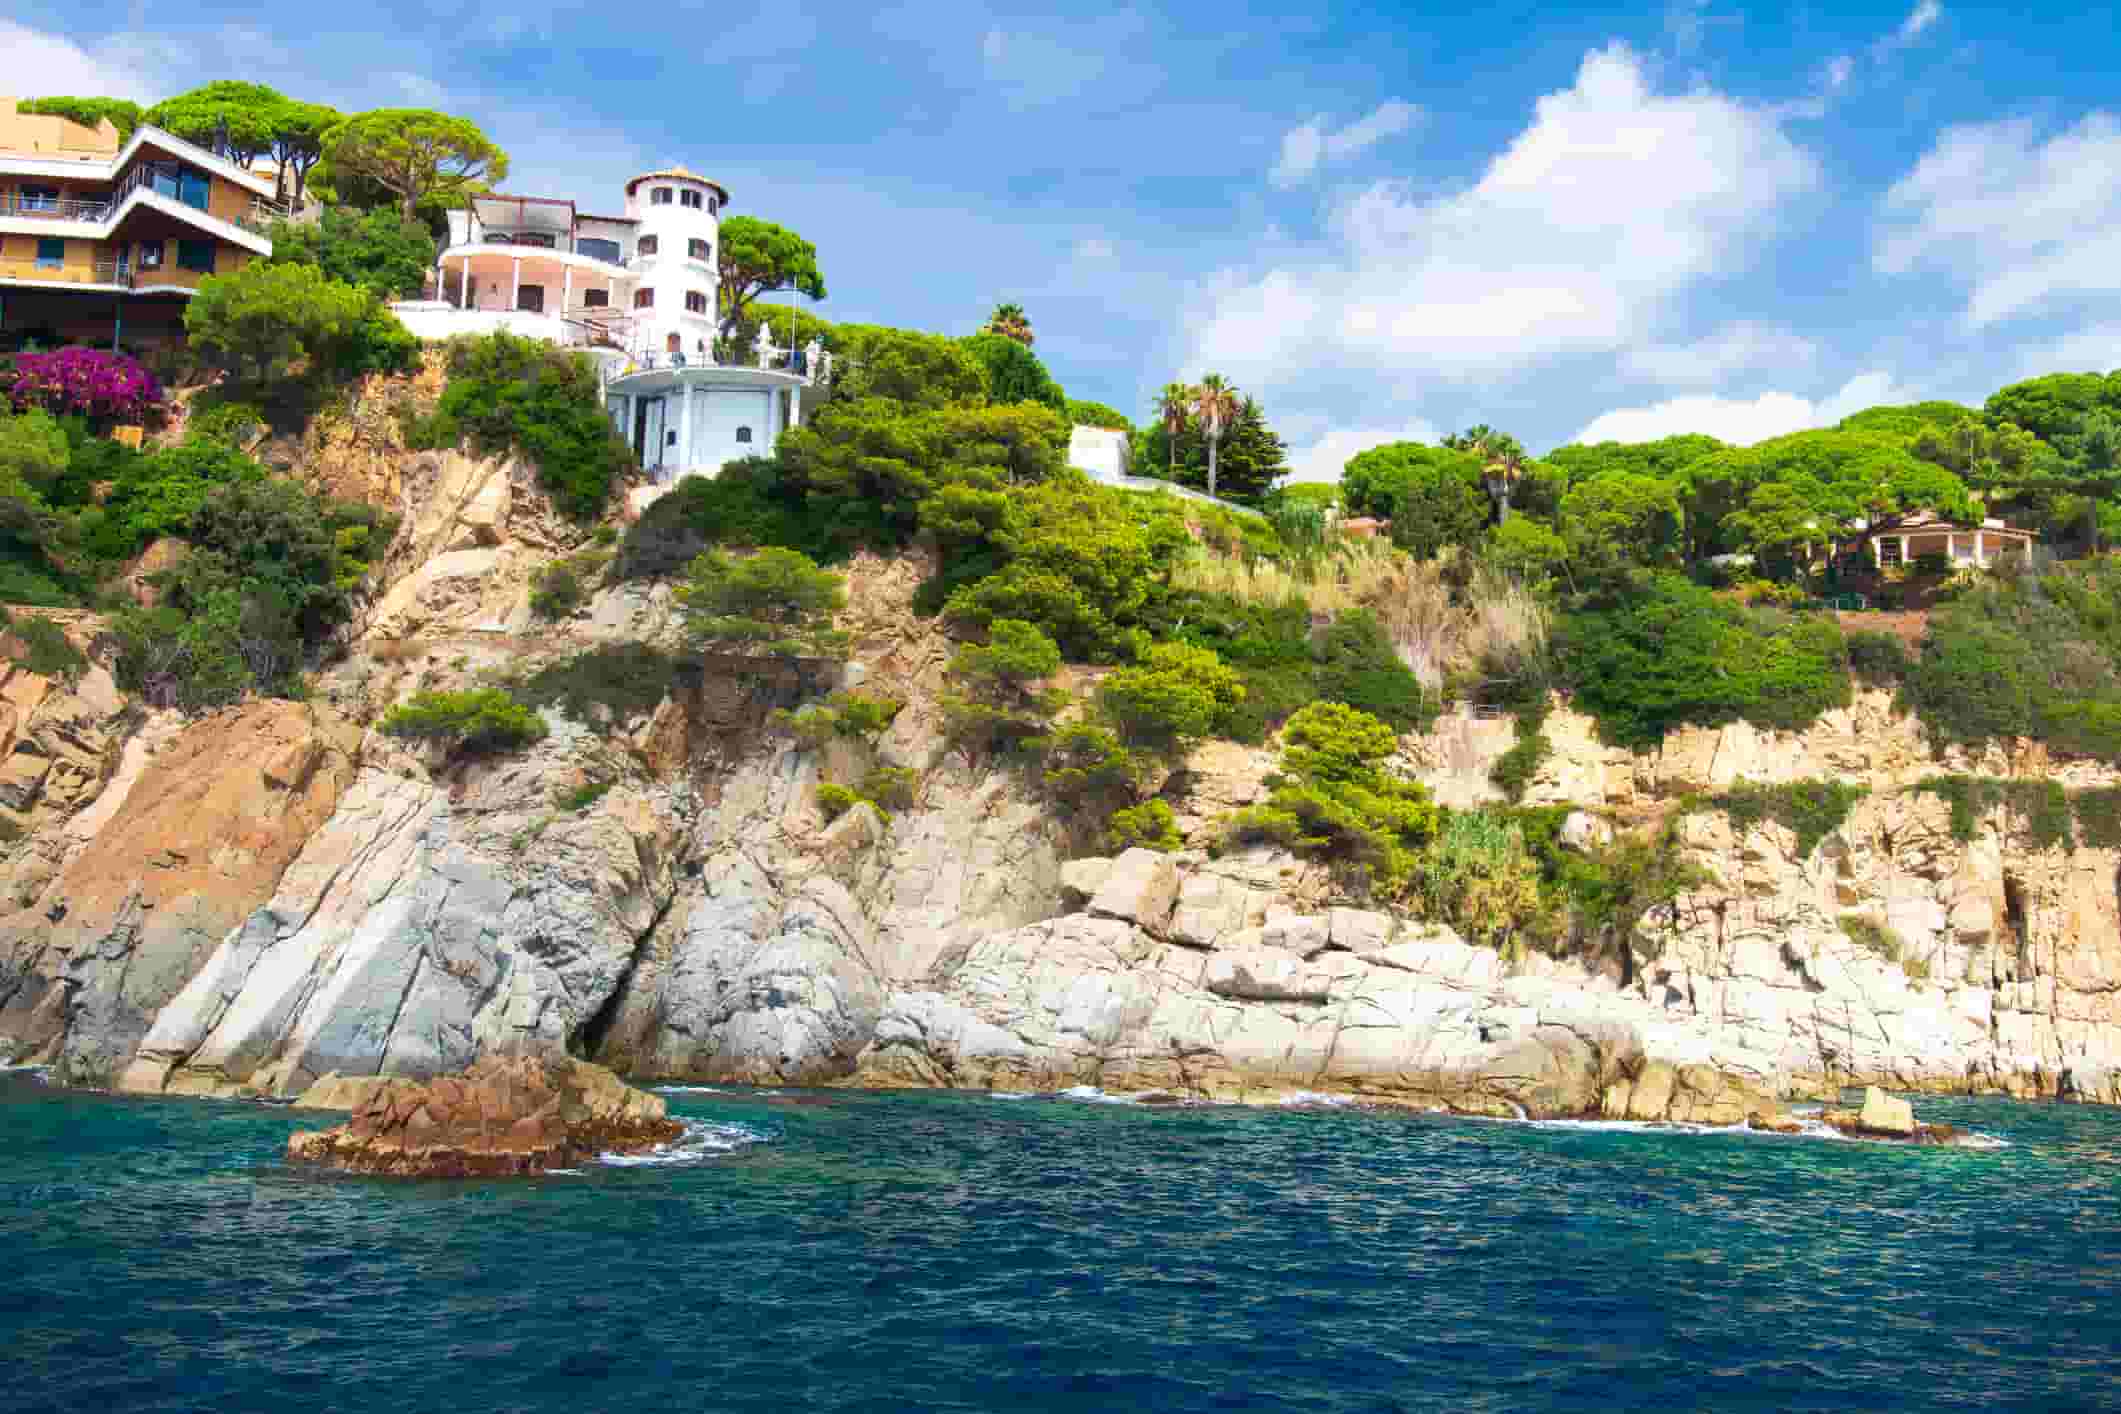 Spanish Villa On Rocky Coast Of Mediterranean Sea